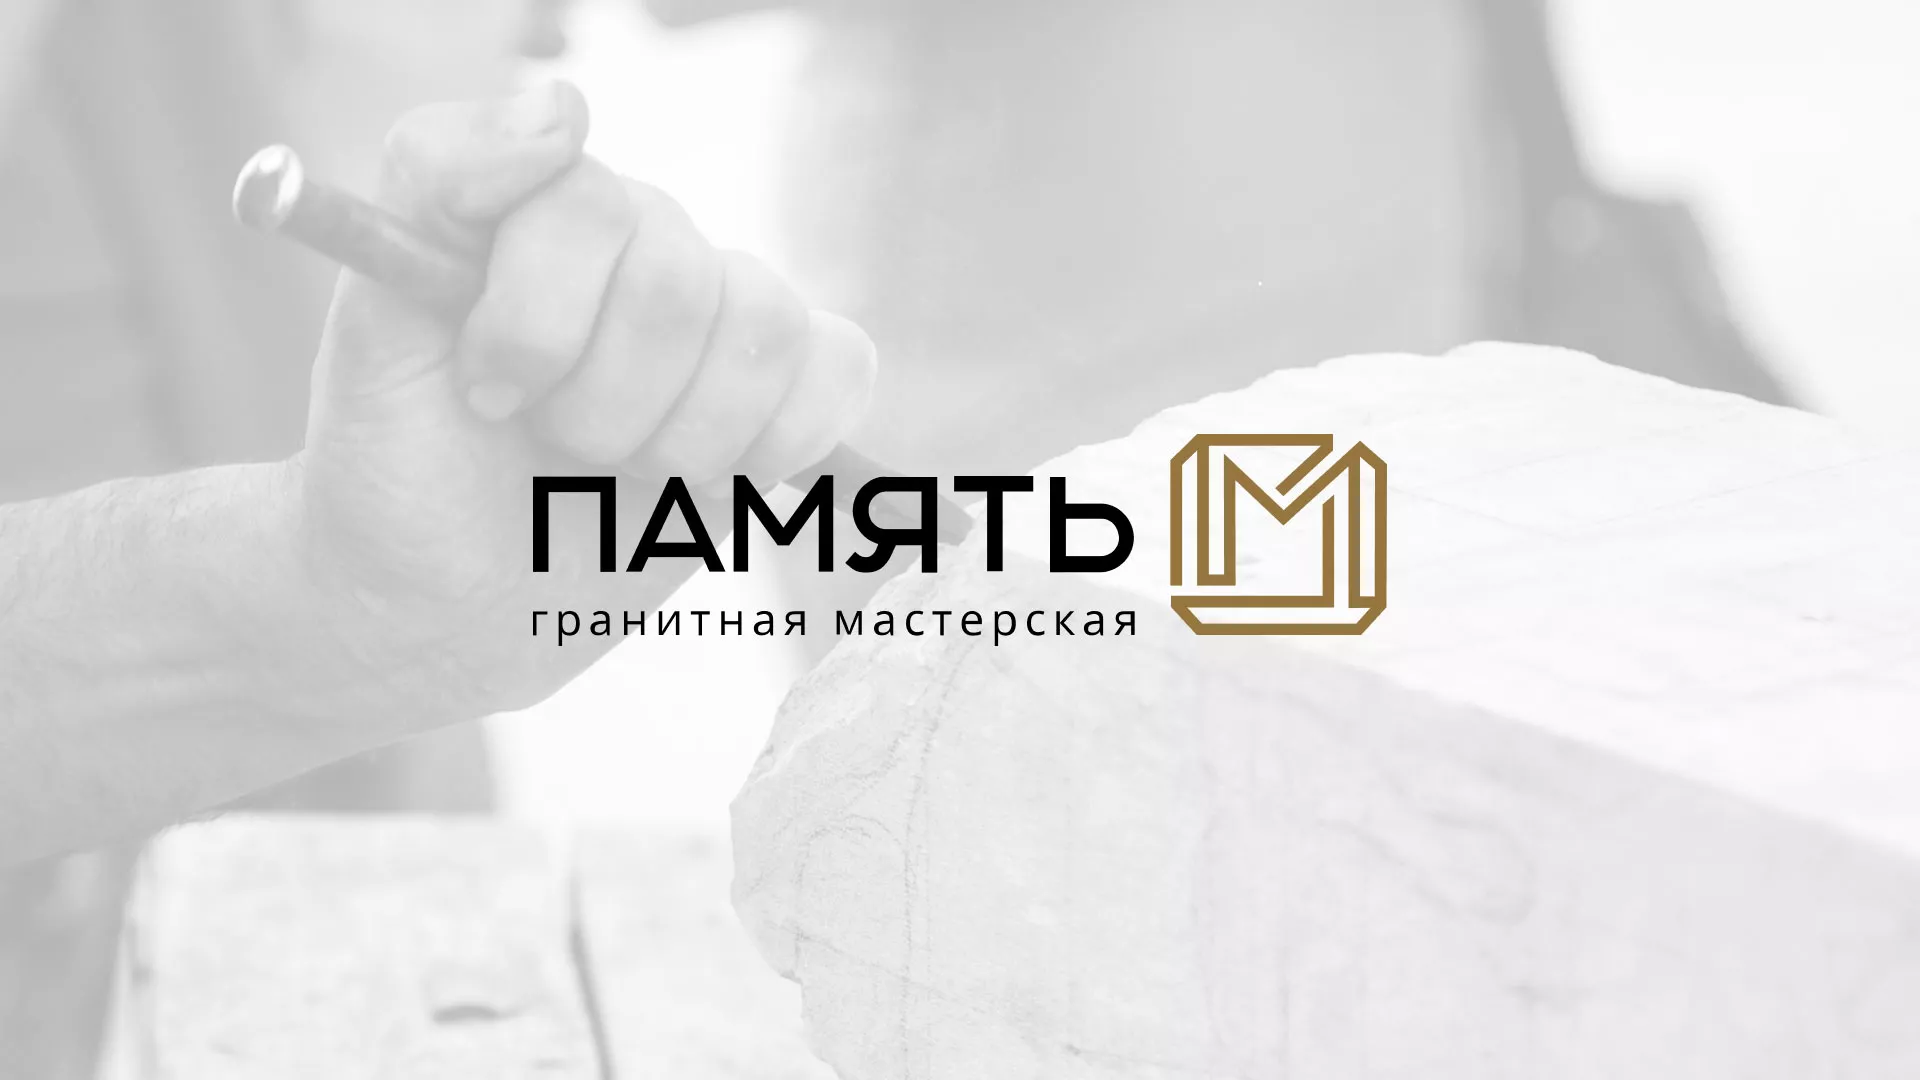 Разработка логотипа и сайта компании «Память-М» в Красноярске